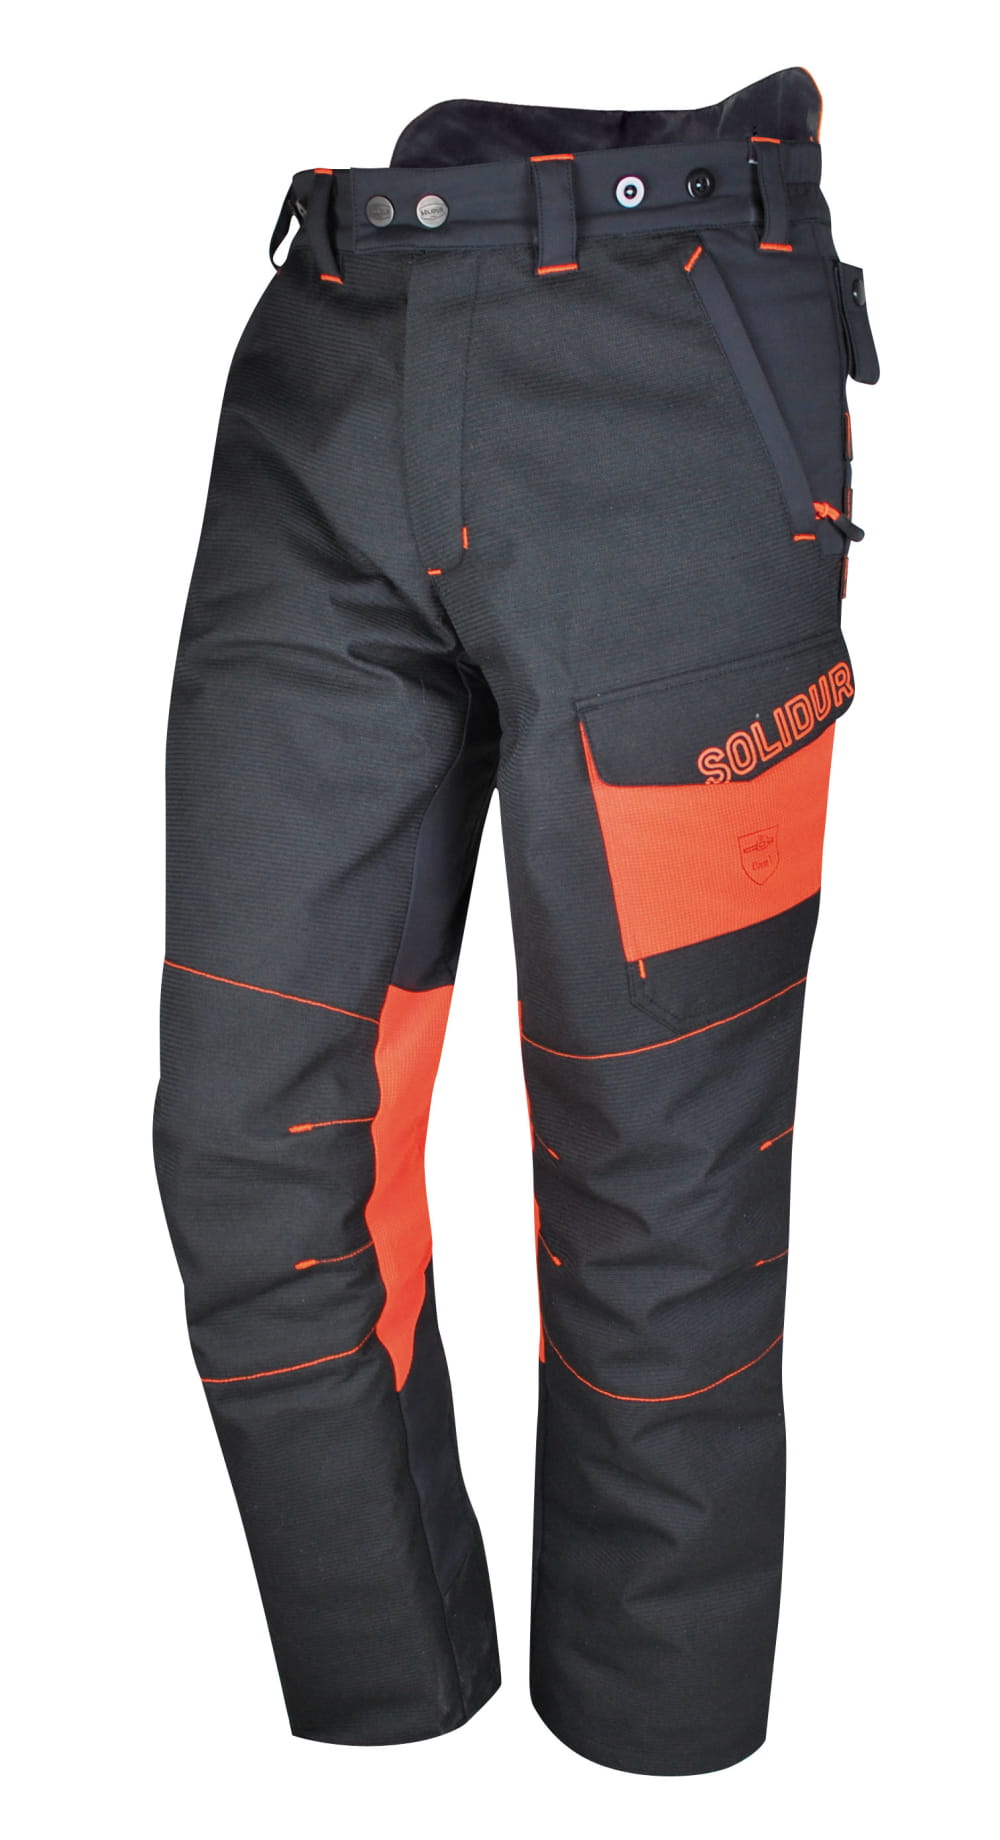 Pantalon anti-coupure bûcheron Type A Classe 1 - SOLIDUR